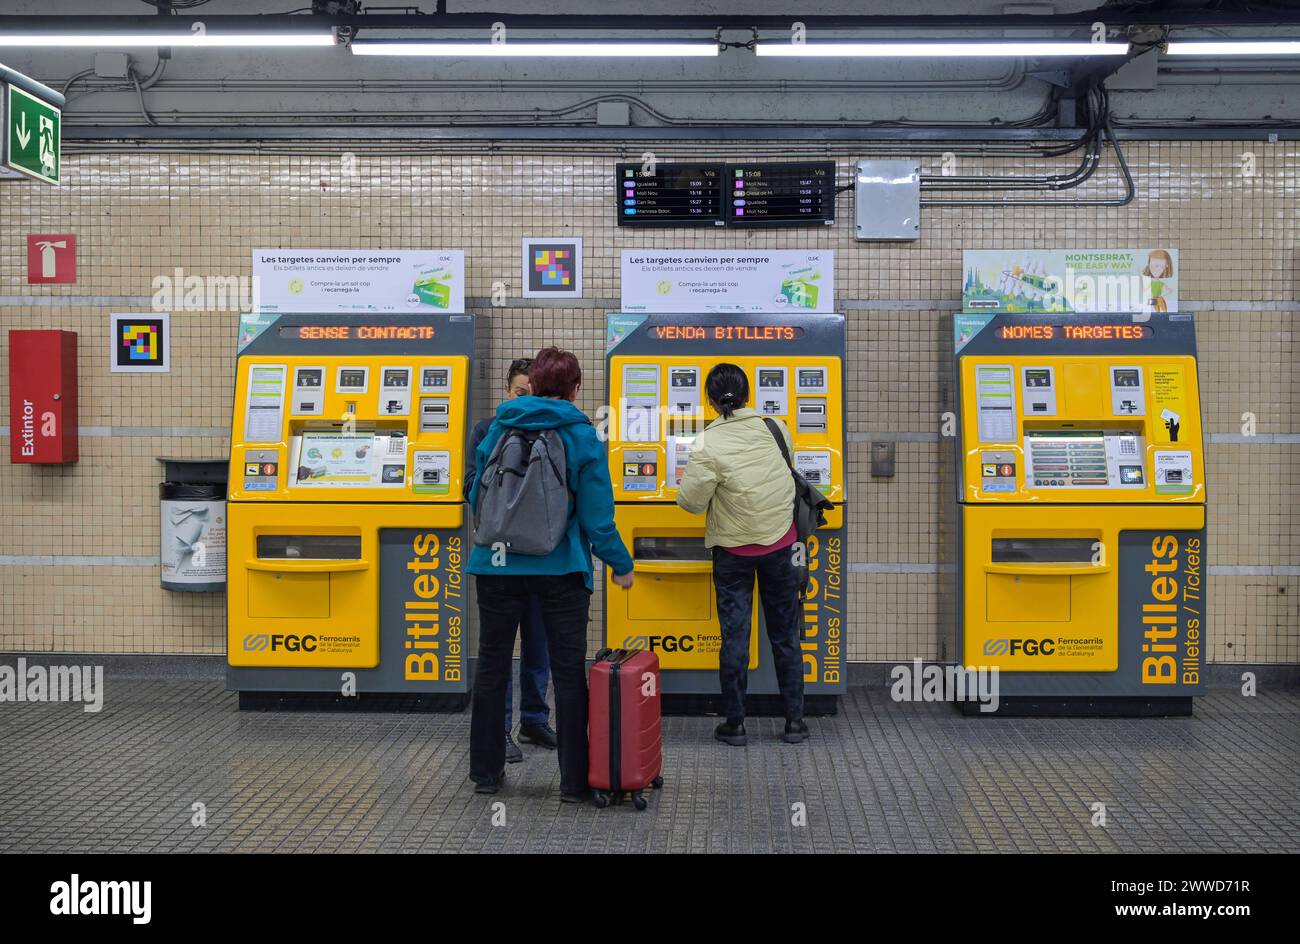 Fahrkartenautomat, Metro, Barcelona, Katalonien, Spanien *** distributeur de billets, Metro, Barcelona, Catalogne, Espagne Banque D'Images